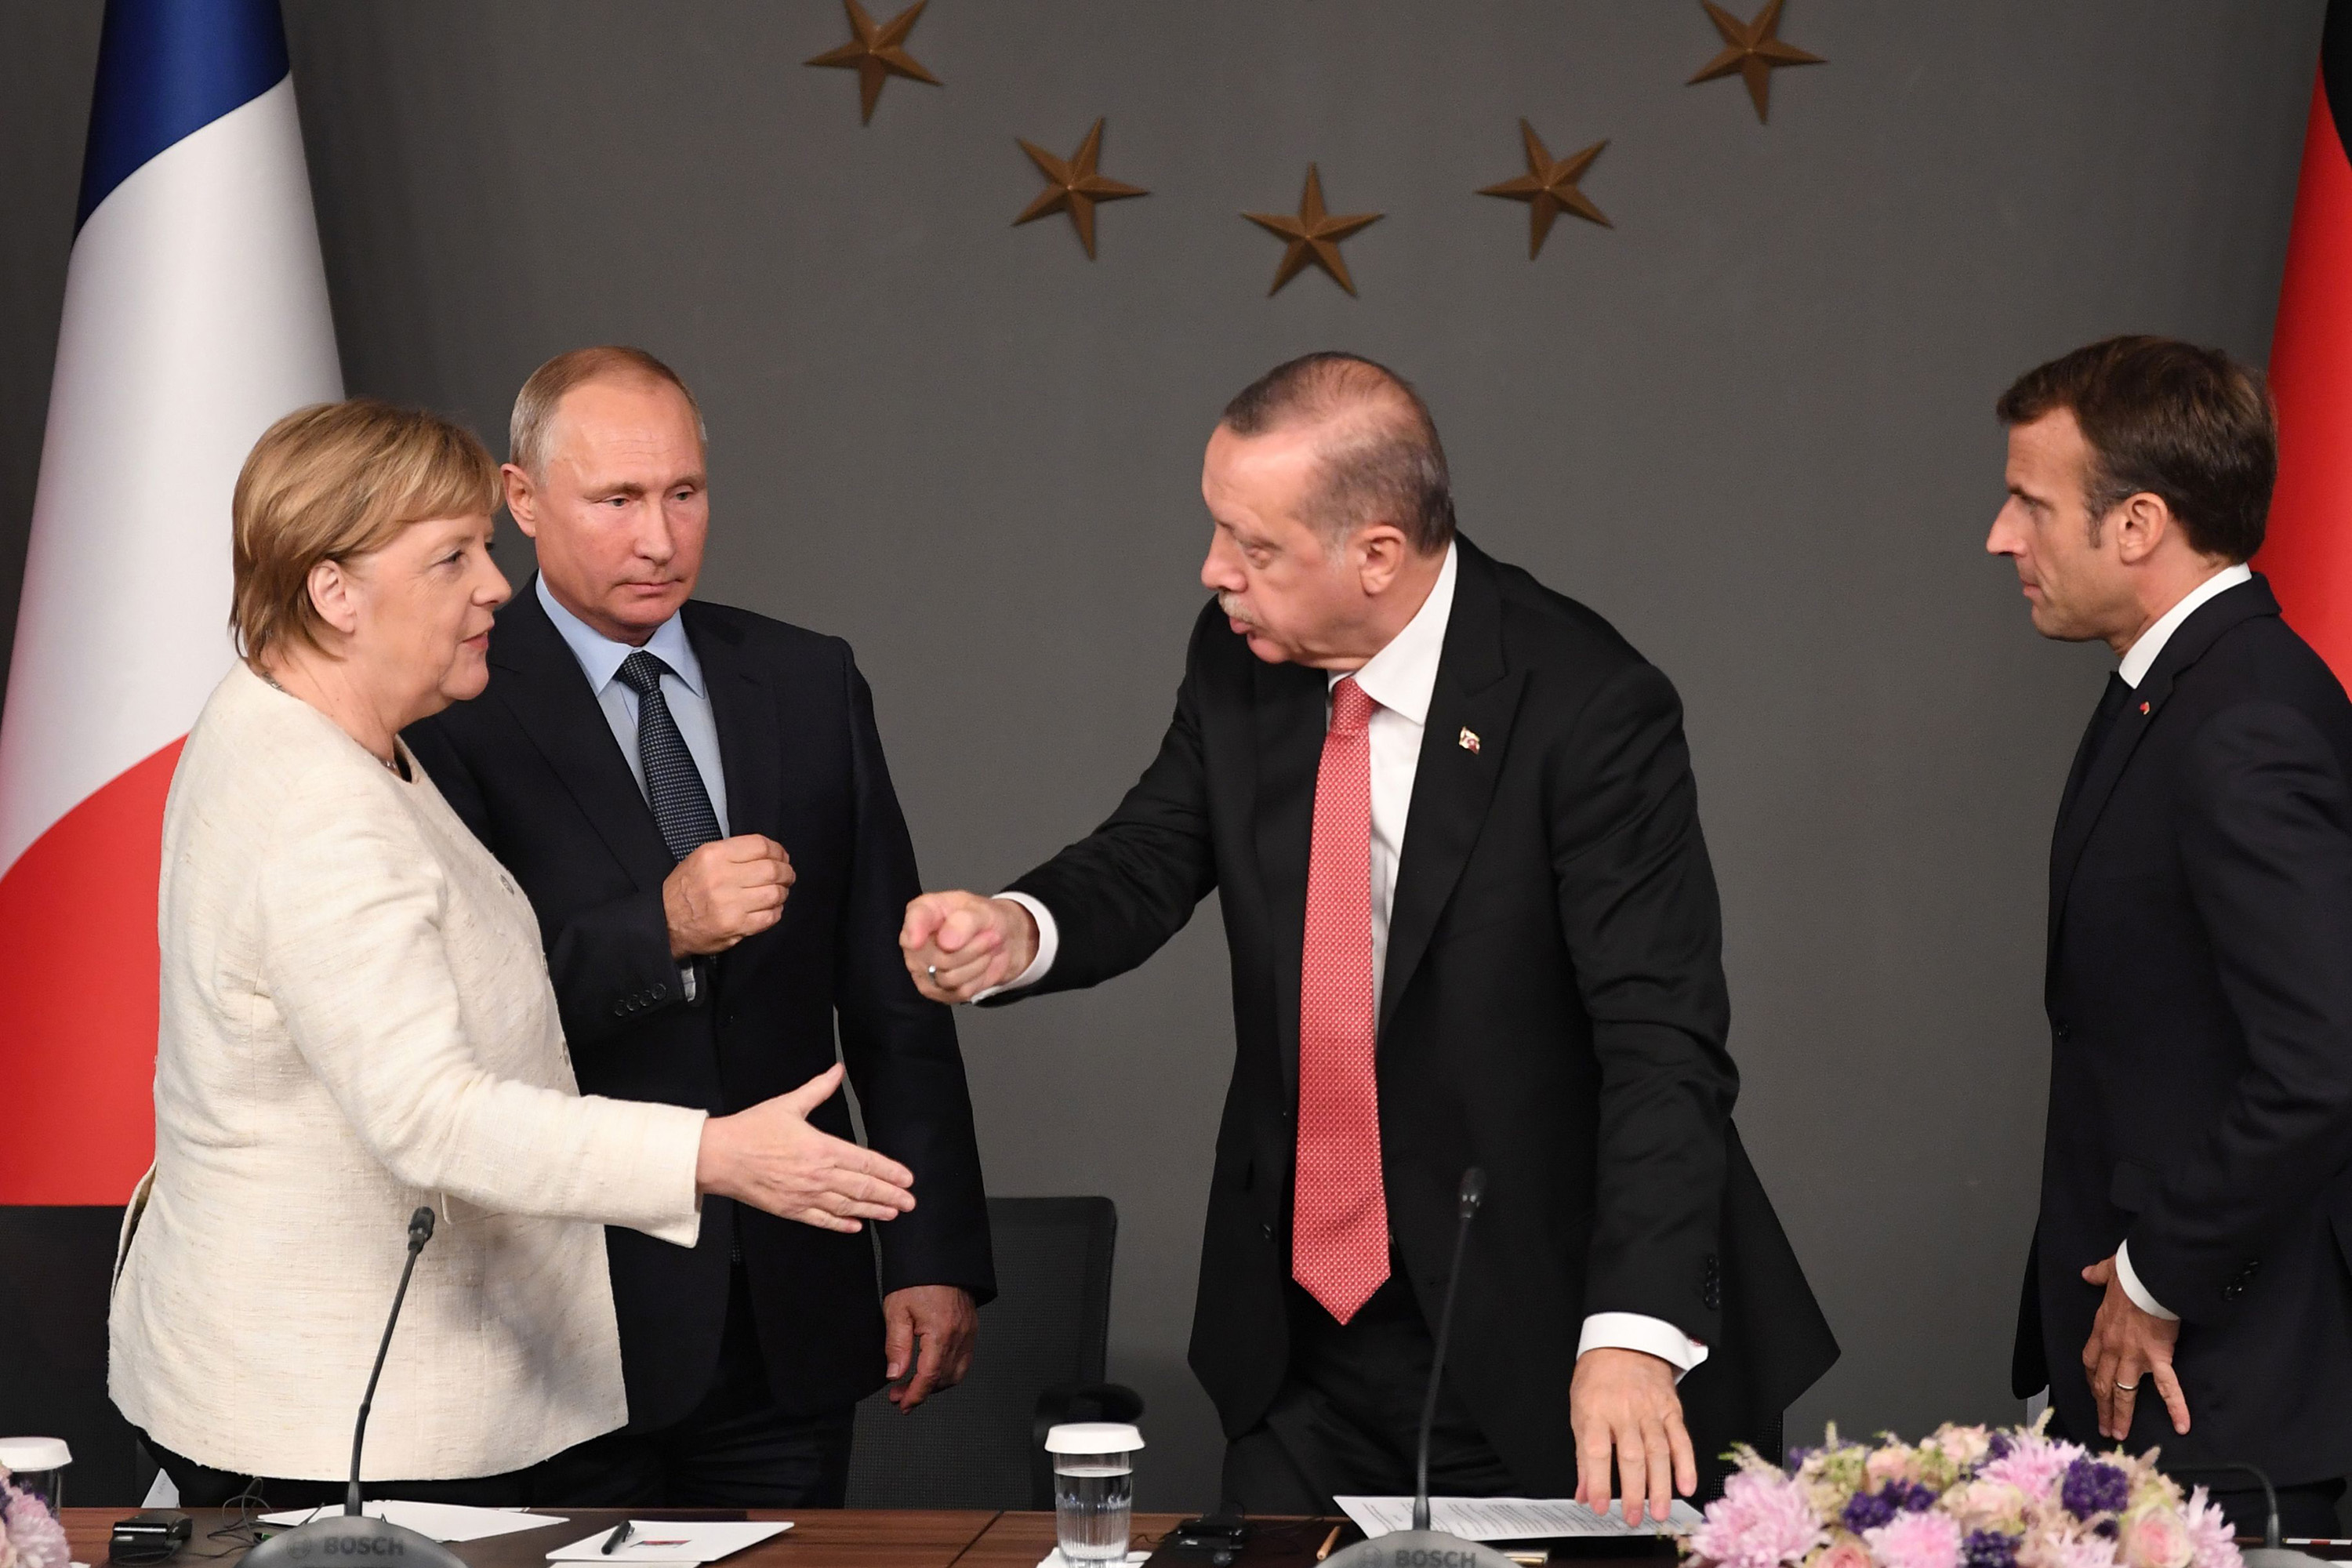 Merkel, Macron, Putin, Erdogan May Meet Amid Syria Crisis - Bloomberg